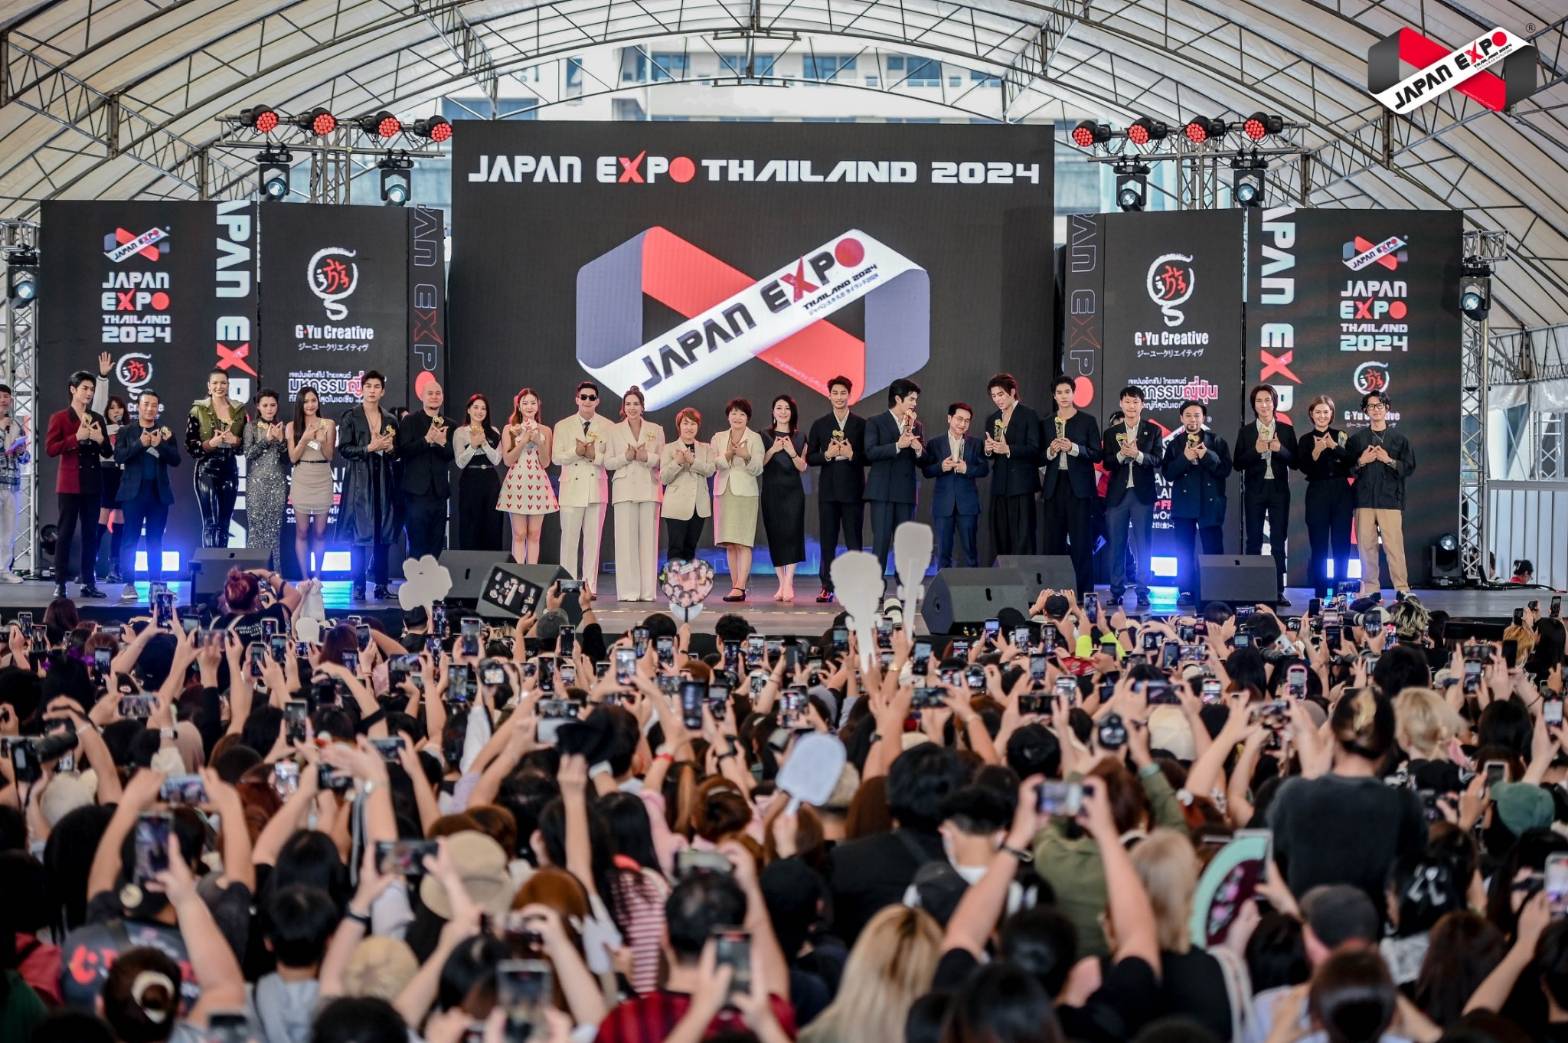 สุดอบอุ่น!!! JAPAN EXPO THAILAND2024 รวมพลังไทย-ญี่ปุ่นสร้าง SOFT POWER กระตุ้นเศรษฐกิจแห่งชาติ คนร่วมงาน 7 แสนคนตลอด 3 วันเต็ม!!! ที่เซ็นทรัลเวิลด์